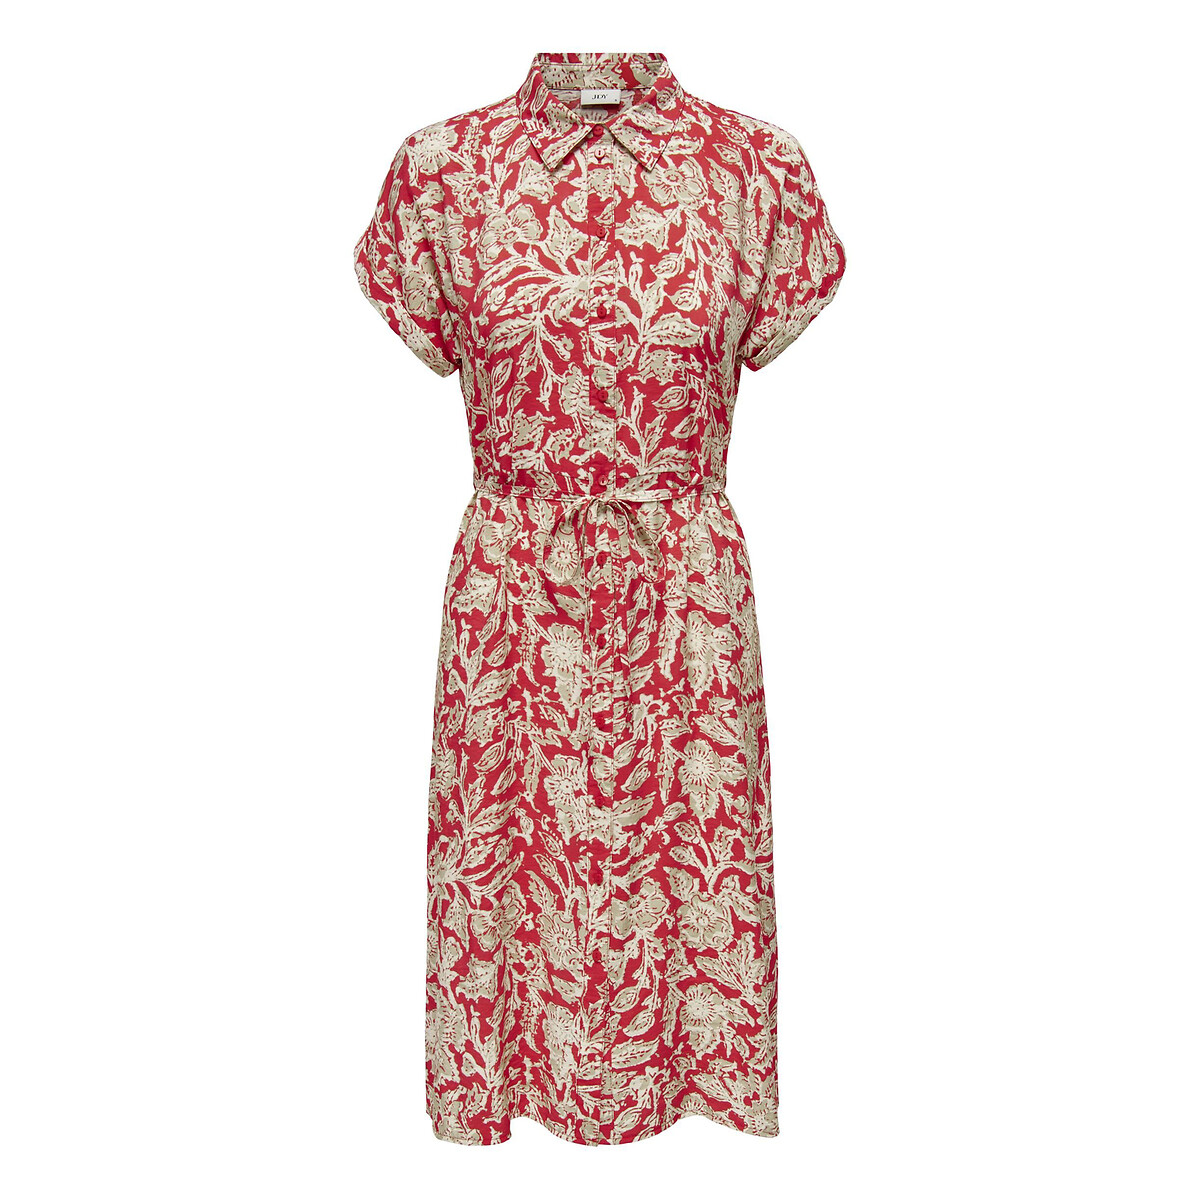 Платье-рубашка с принтом и короткими рукавами XS красный платье с короткими рукавами и принтом 0 xs бежевый